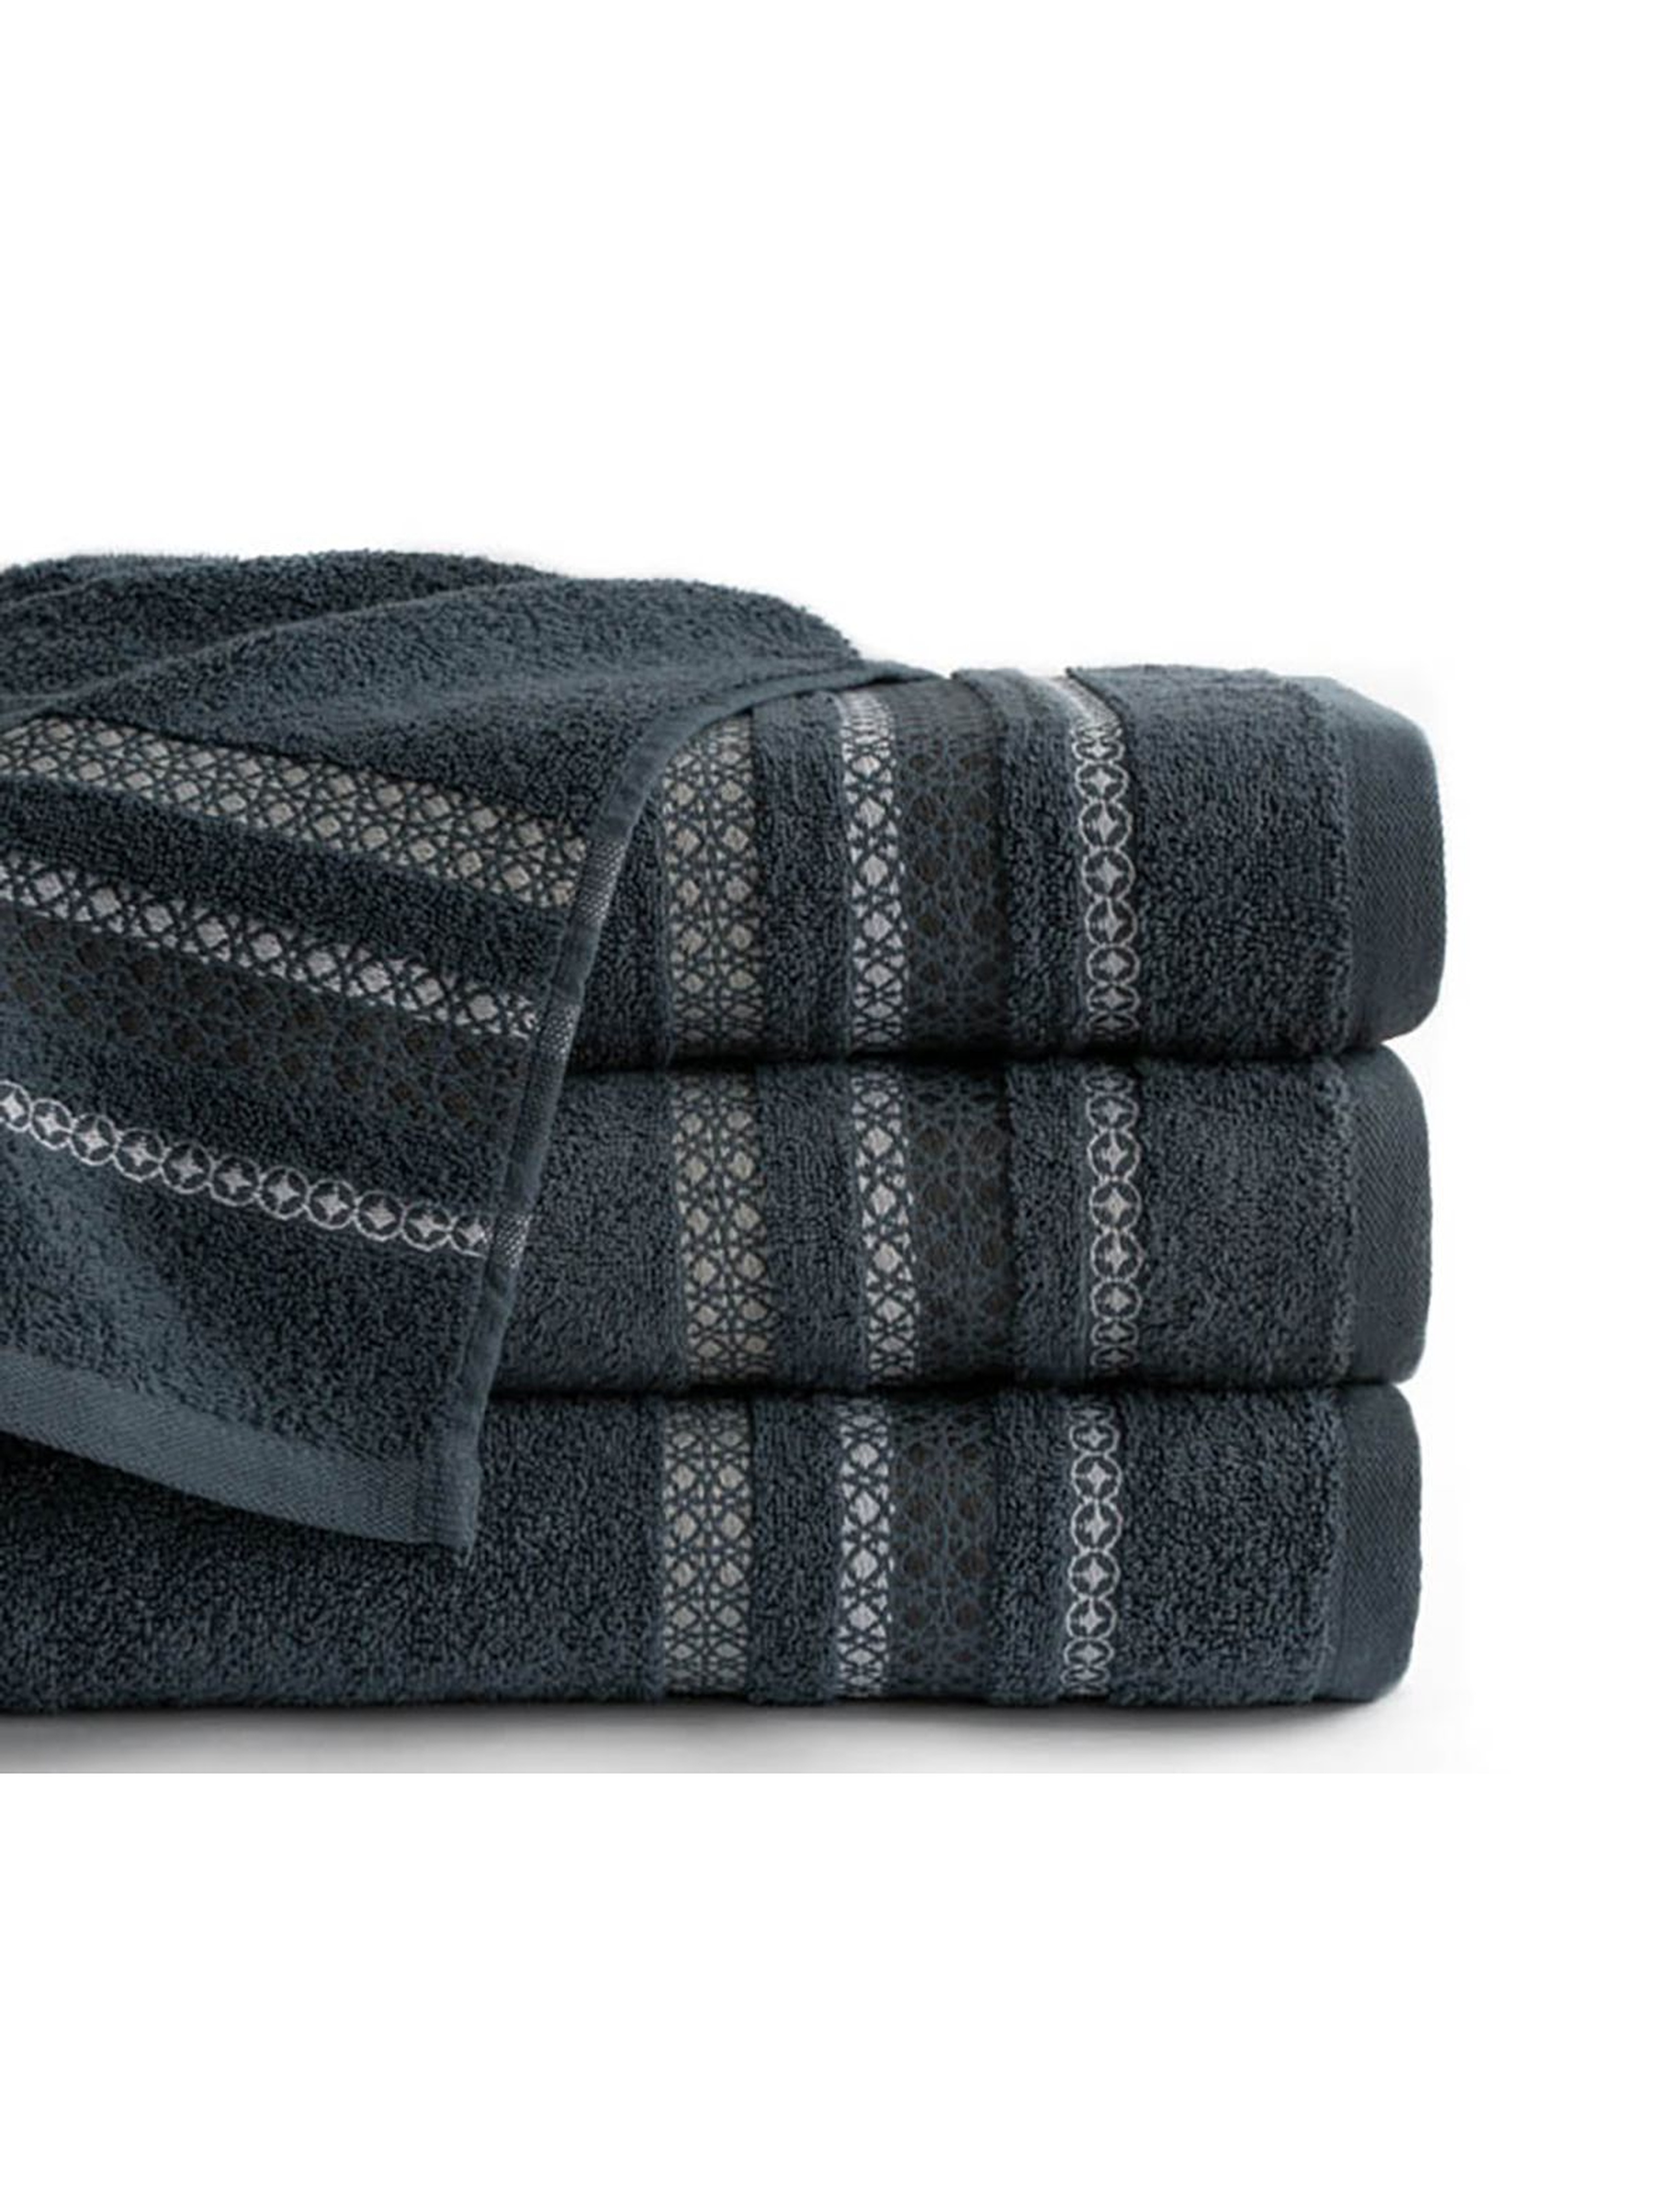 Bawełniany ręcznik CLOE  50x90  cm - szary